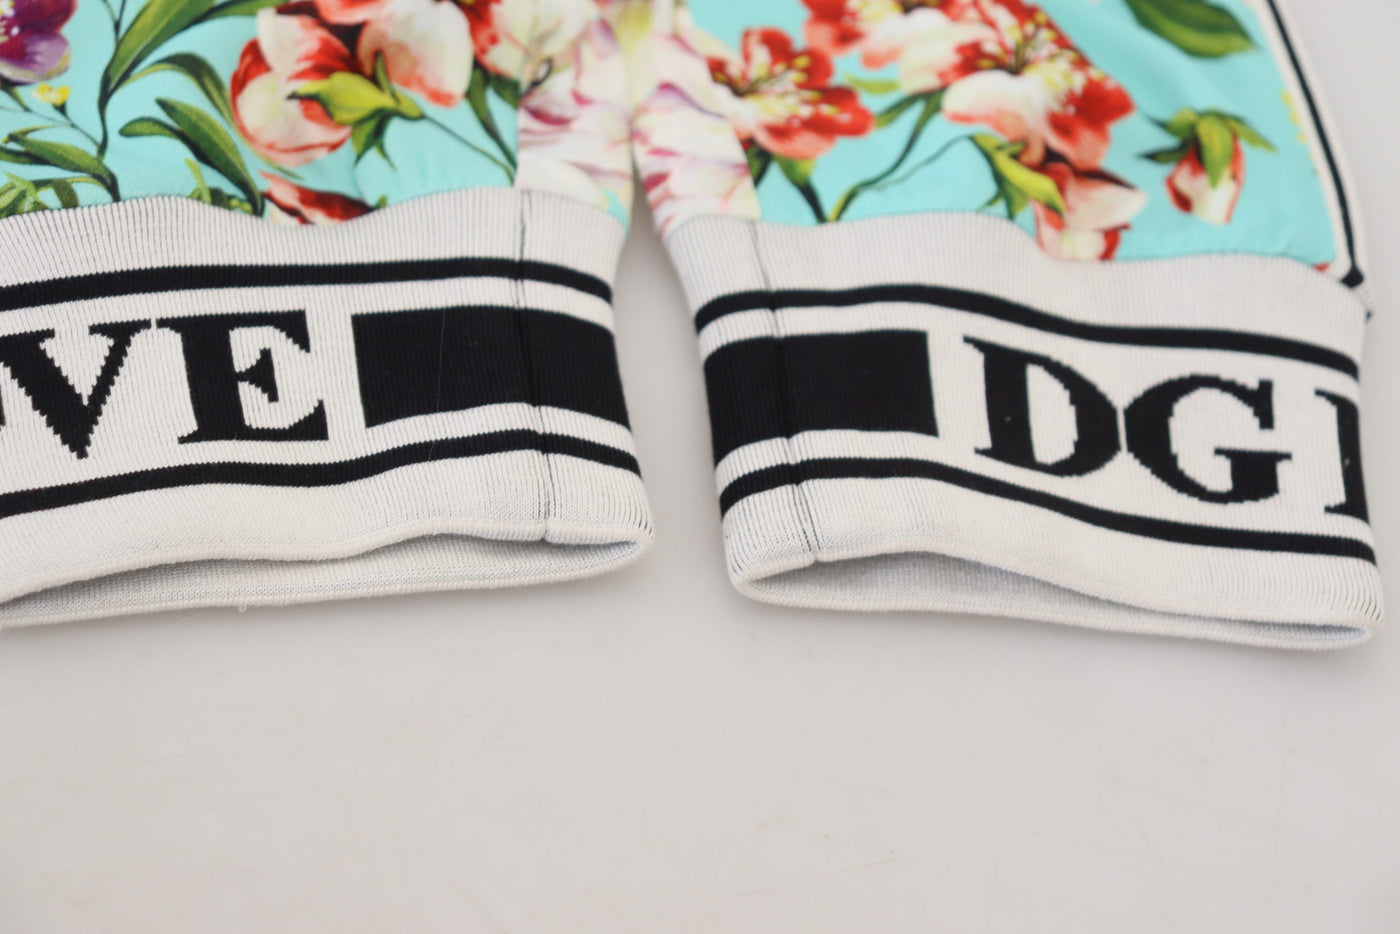 Dolce & Gabbana Multicolor Floral Sweatpants Pants